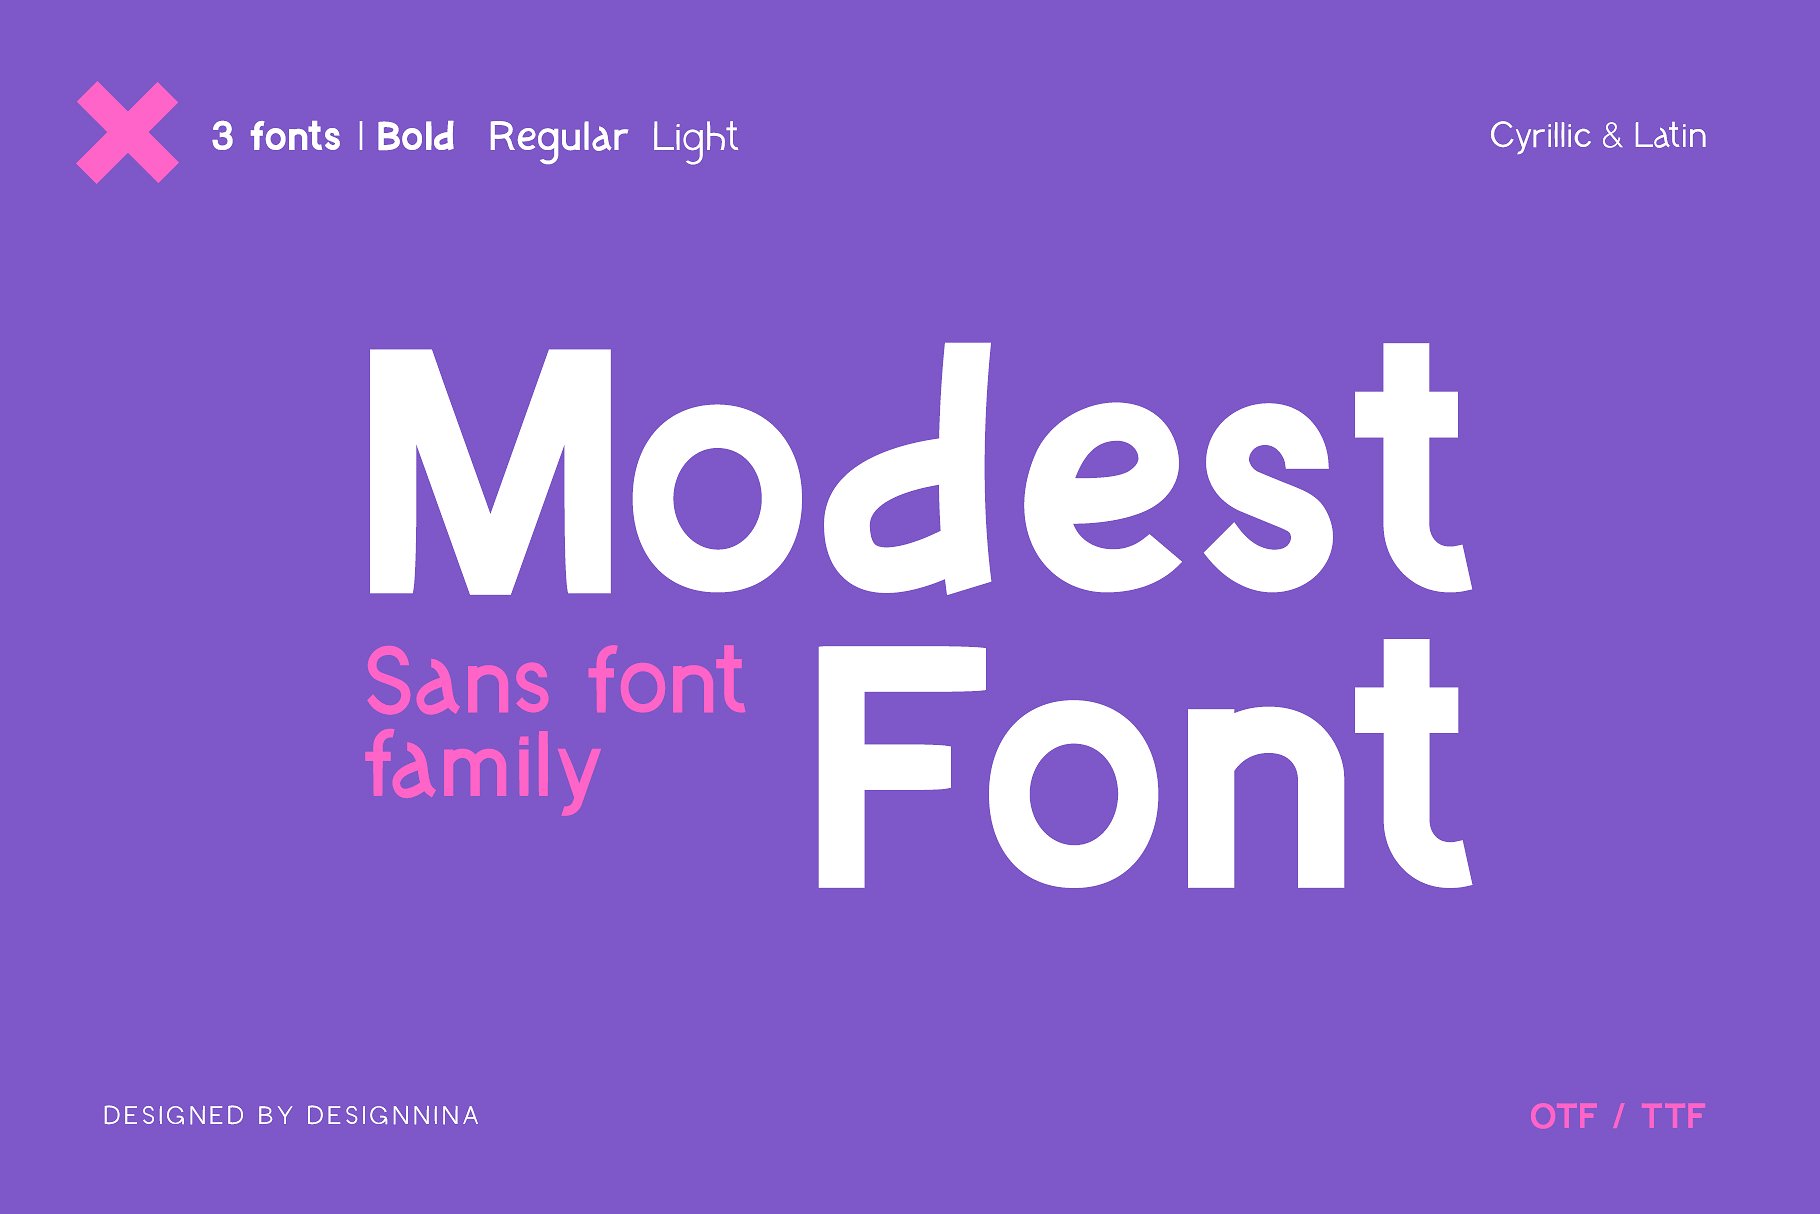 Ejemplo de fuente Modest Font Light